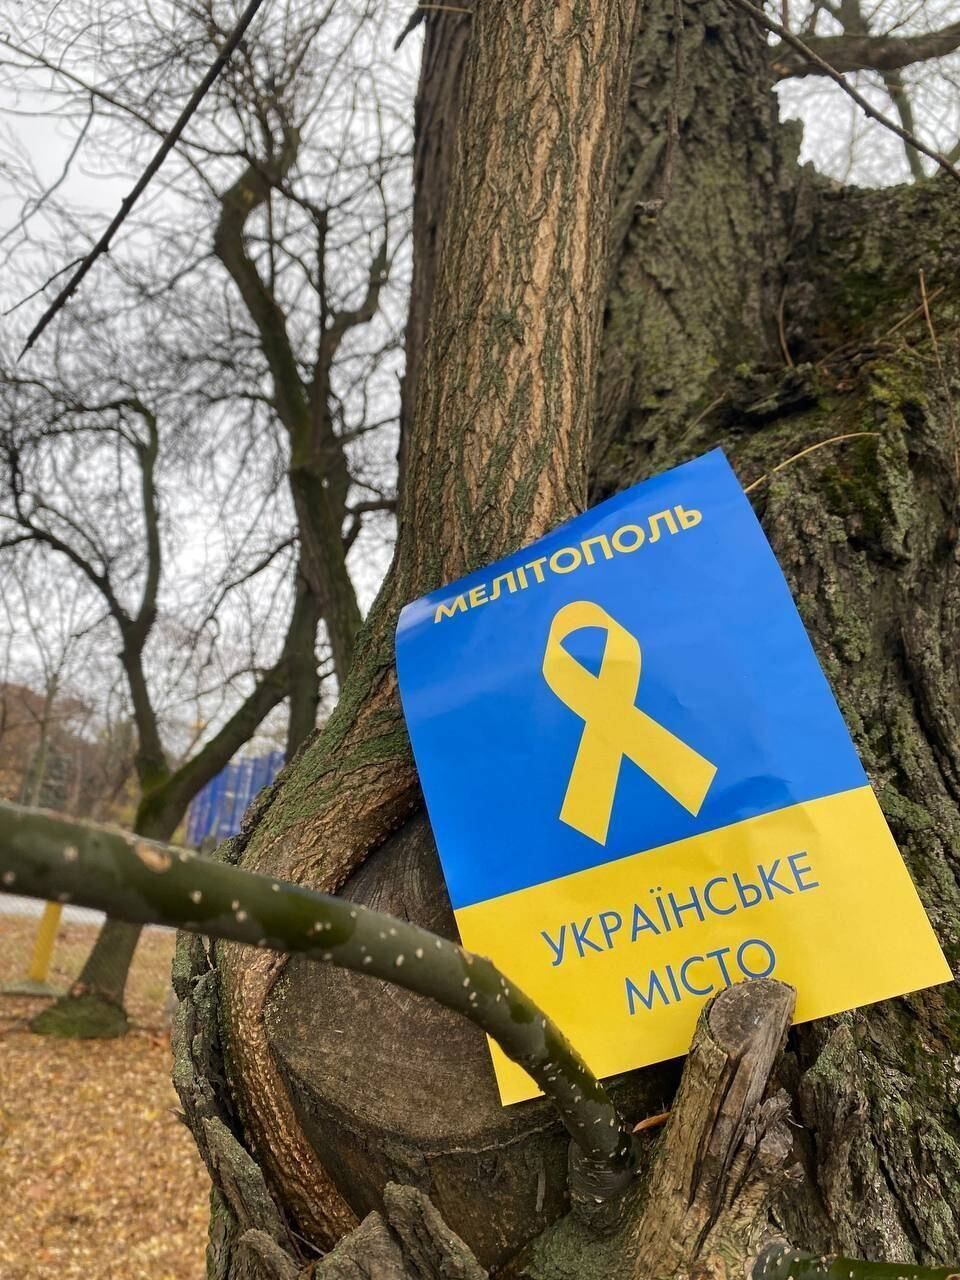 "Мелітополь – українське місто": партизани нагадали загарбникам, що ті на чужій землі. Фото і відео 